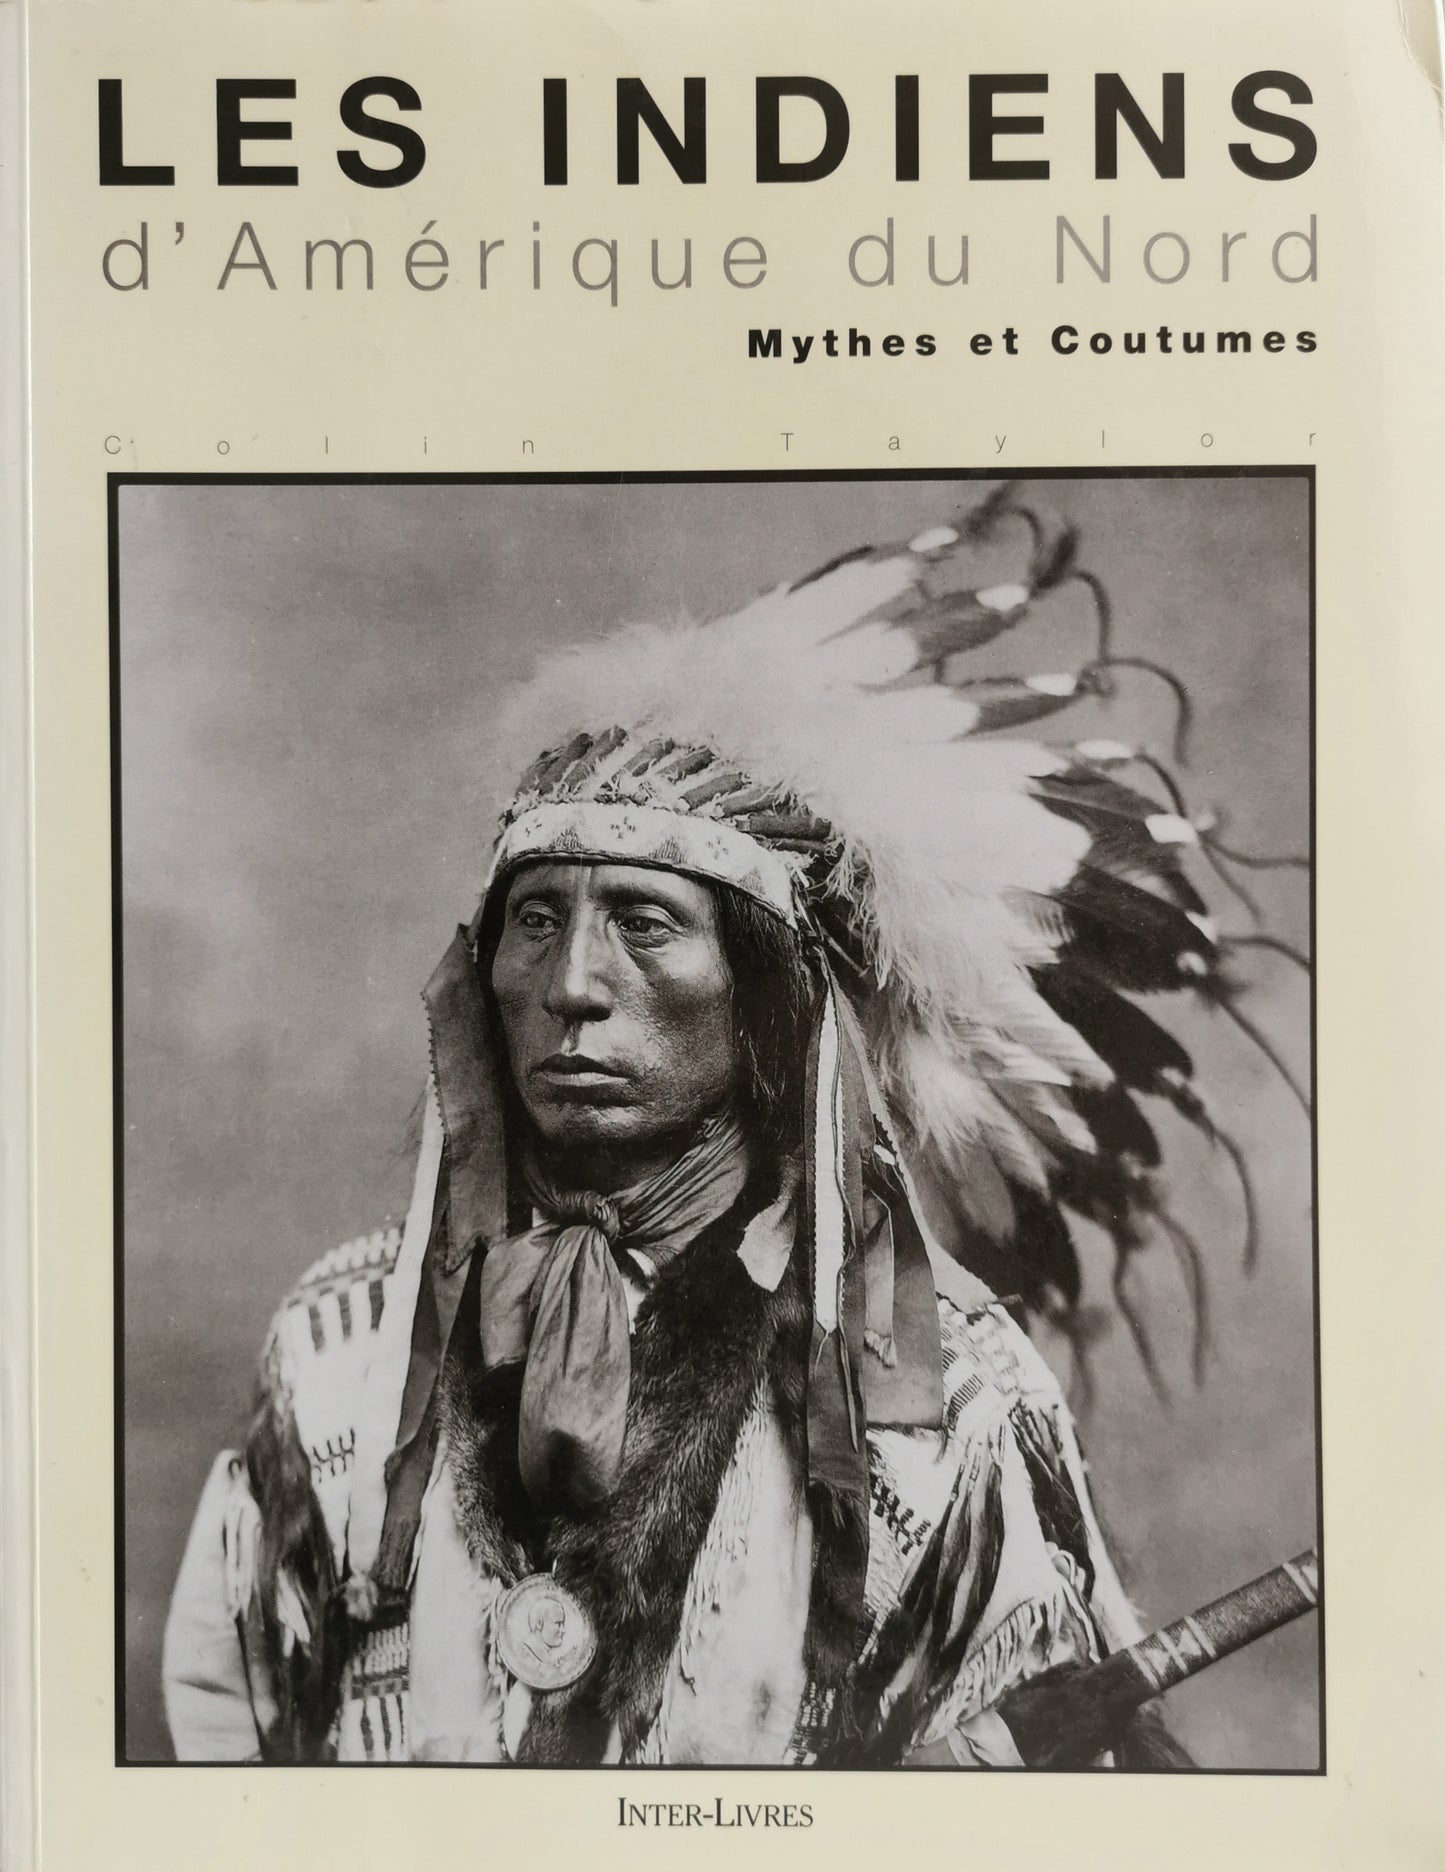 Les Indiens d'Amérique du Nord, Mythes et Coutumes, Colin Taylor, trad. Catherine Bednarek, Inter-Livres, 1995.